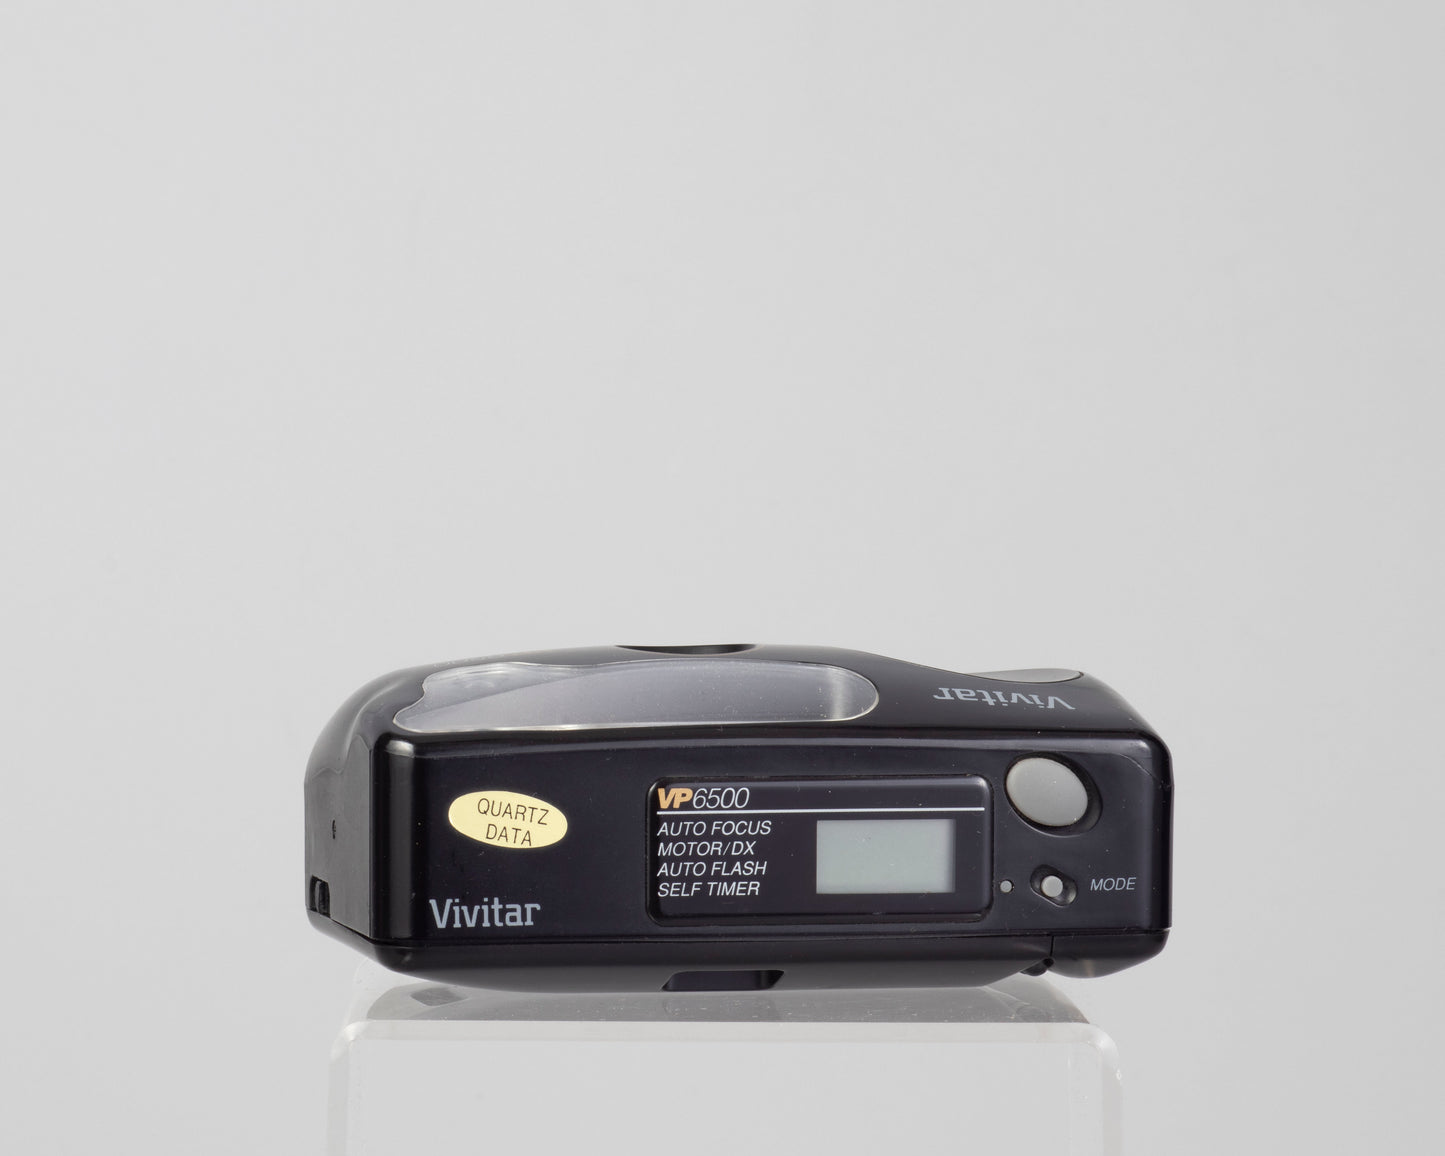 Vivitar VP6500 compact autofocus 35mm film camera